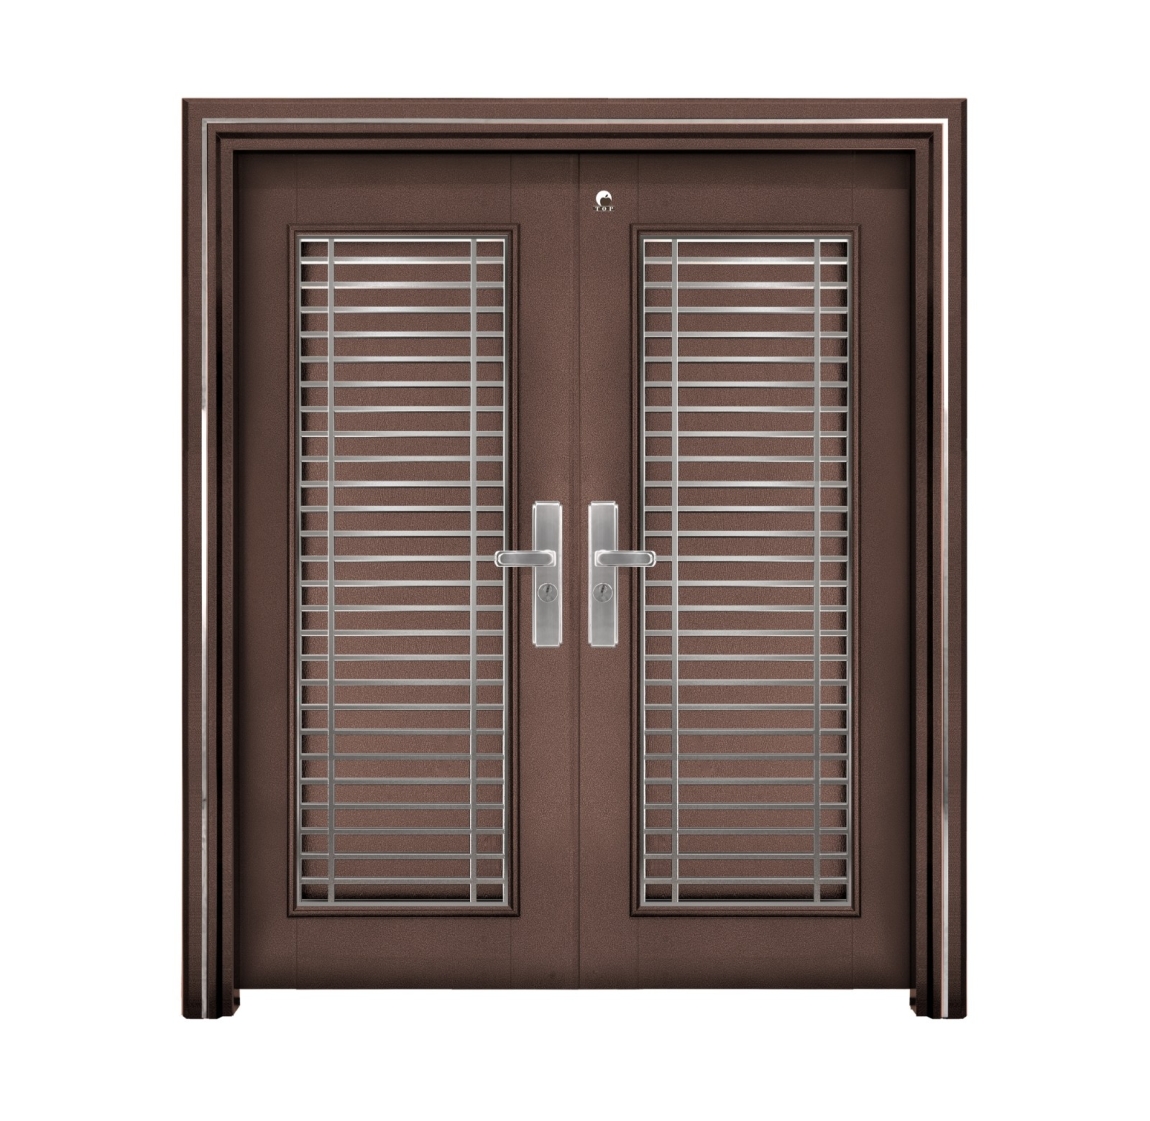 Pintu Keselamatan - 304 E Pintu Keselamatan Double 6 Kaki x 7 kaki Warna Coklat  Pintu Keselamatan Carta Pilihan Warna Corak